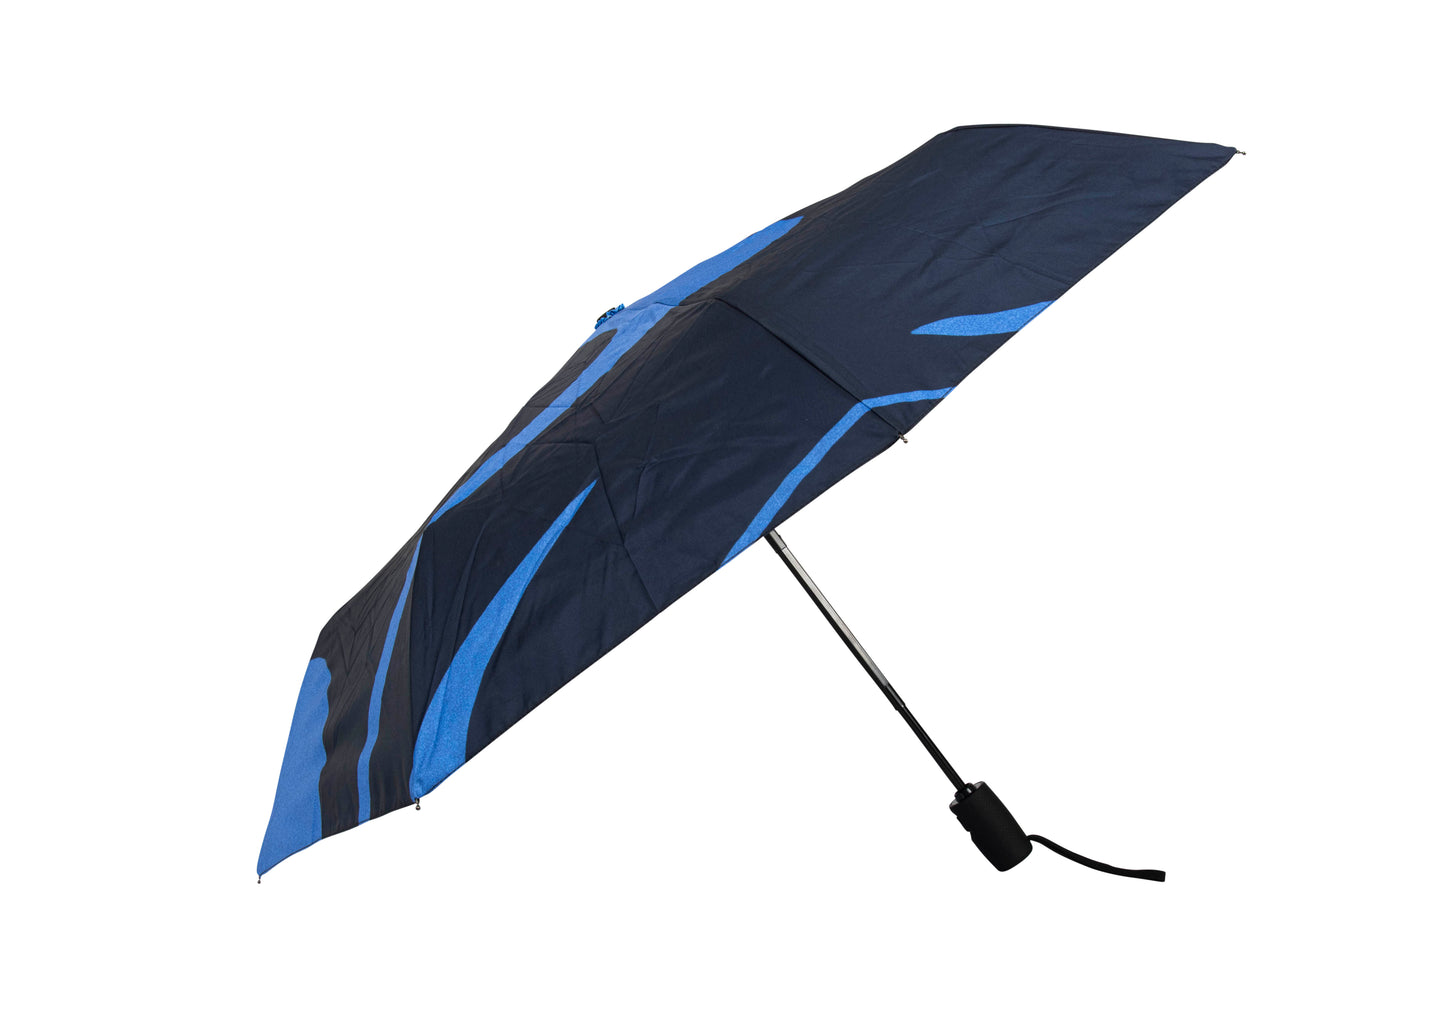 Ups & Downs Umbrella